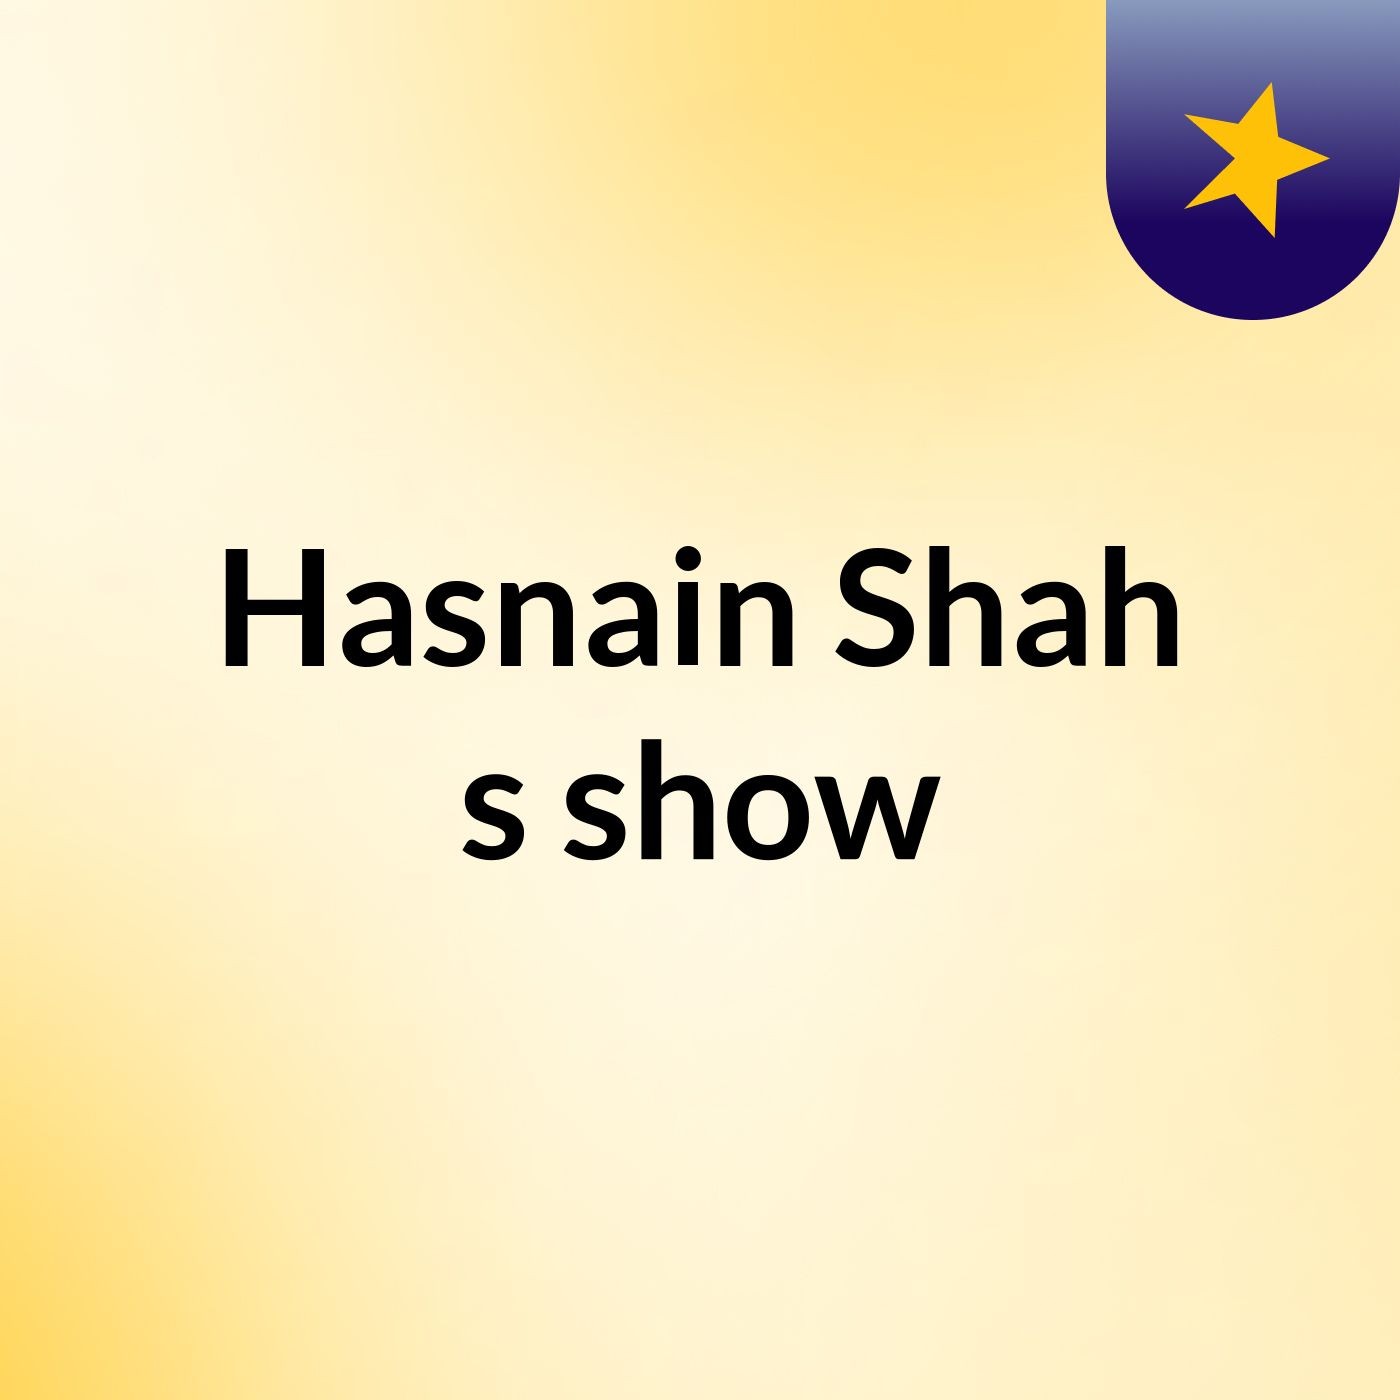 Hasnain Shah's show